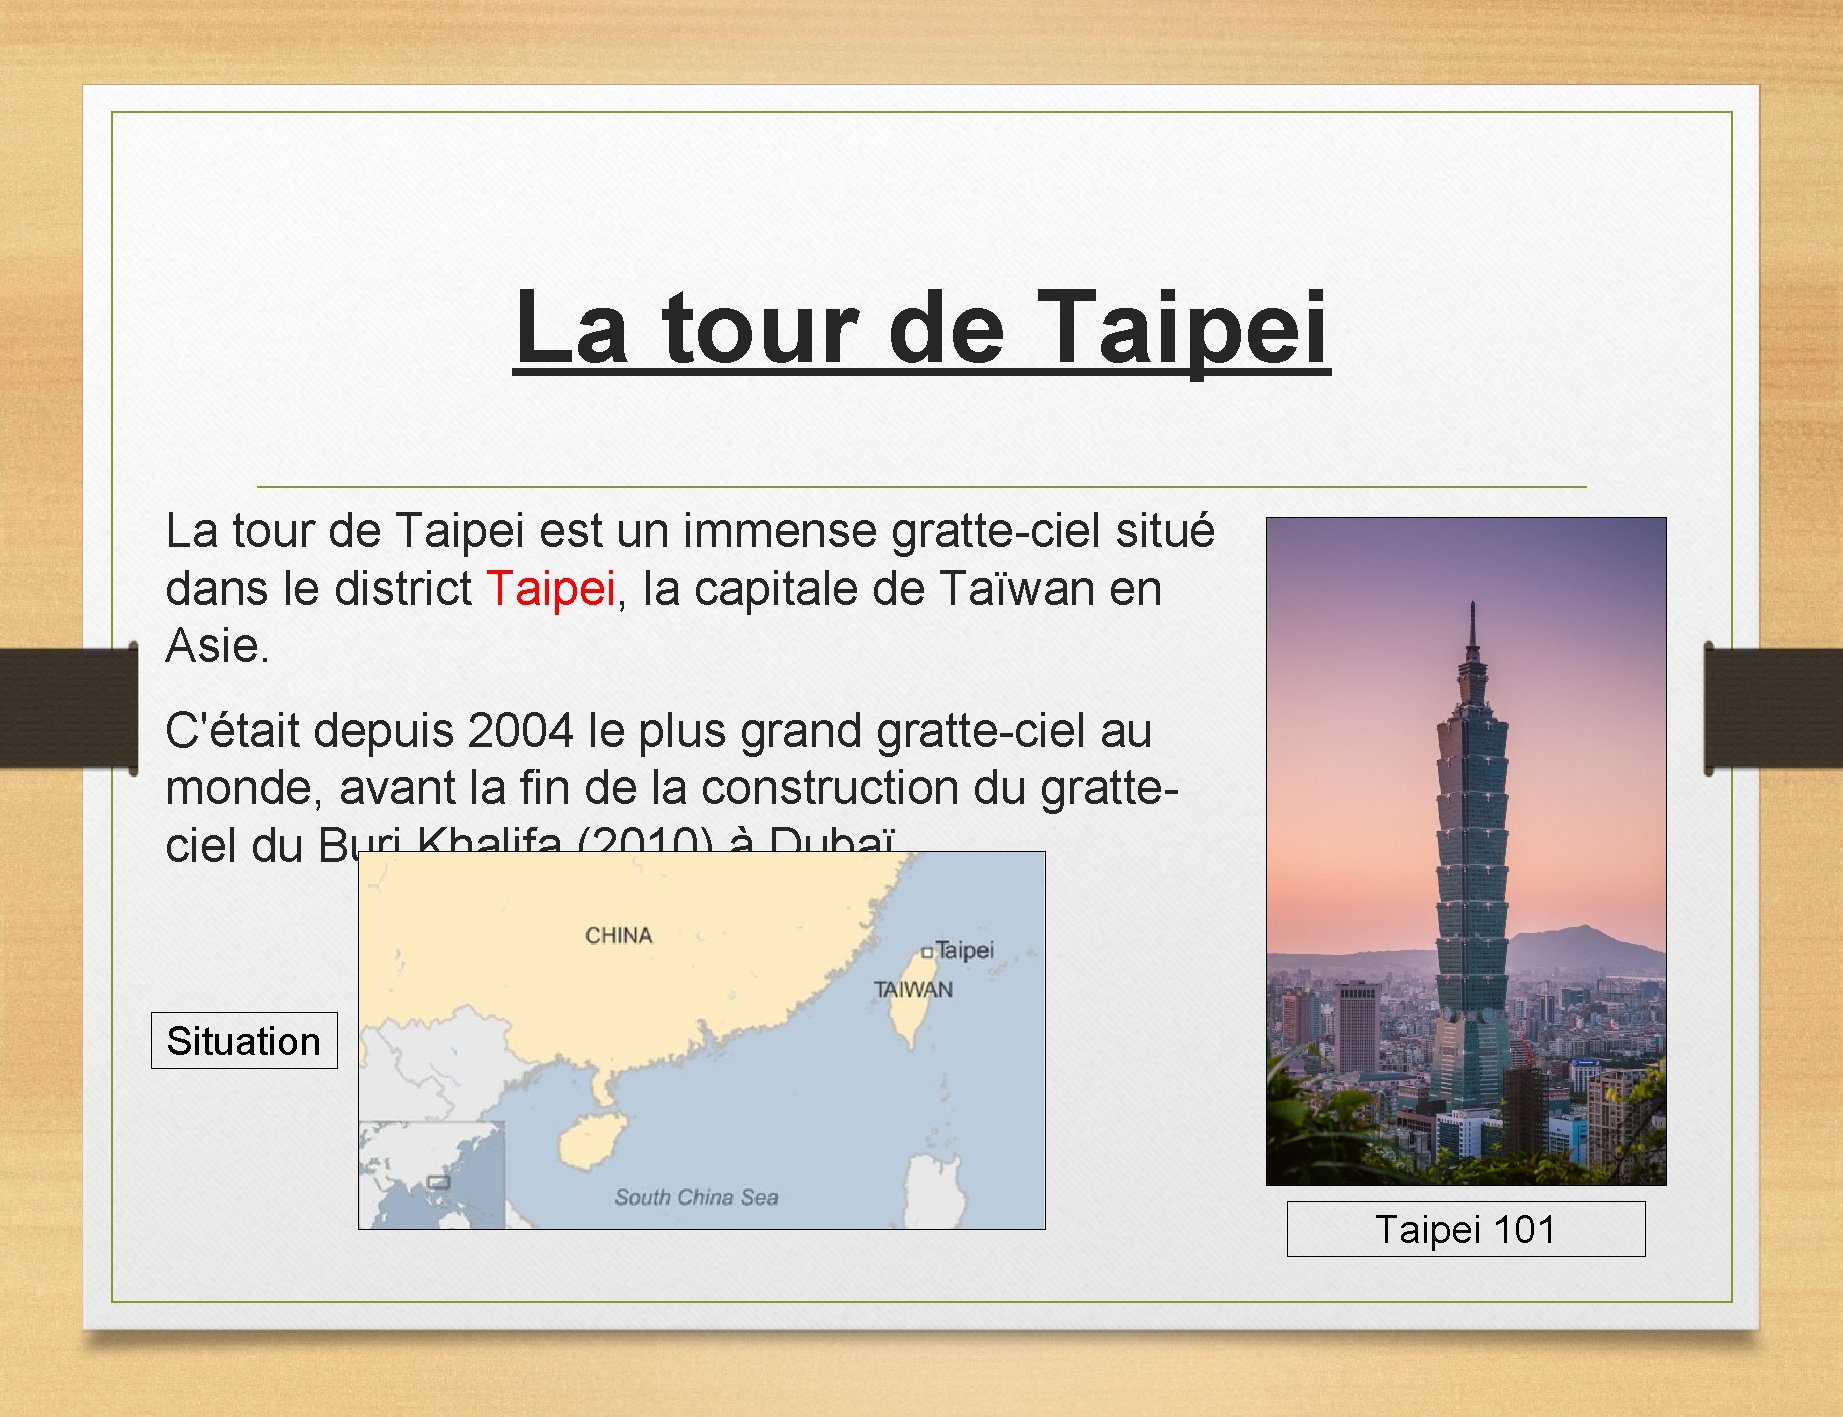 La tour de Taipei est un immense gratte-ciel situé dans le district Taipei, la